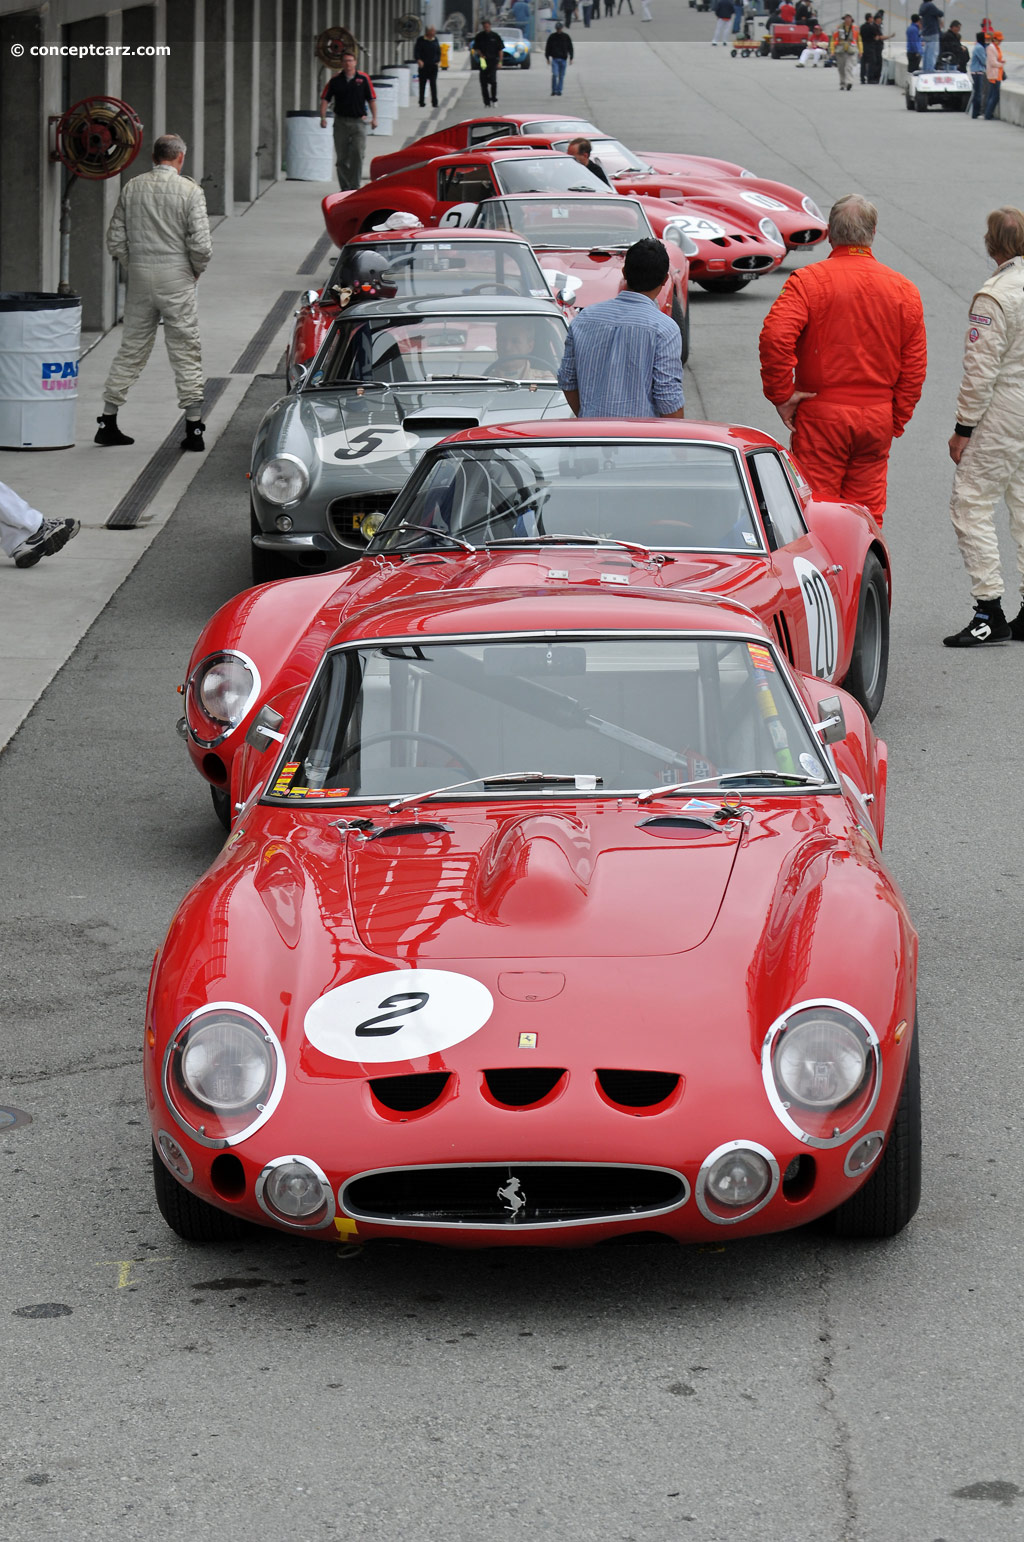 1963 Ferrari 250 GTO Images. Photo: 63-Ferrari-250GTO-4561-DV-11 ...